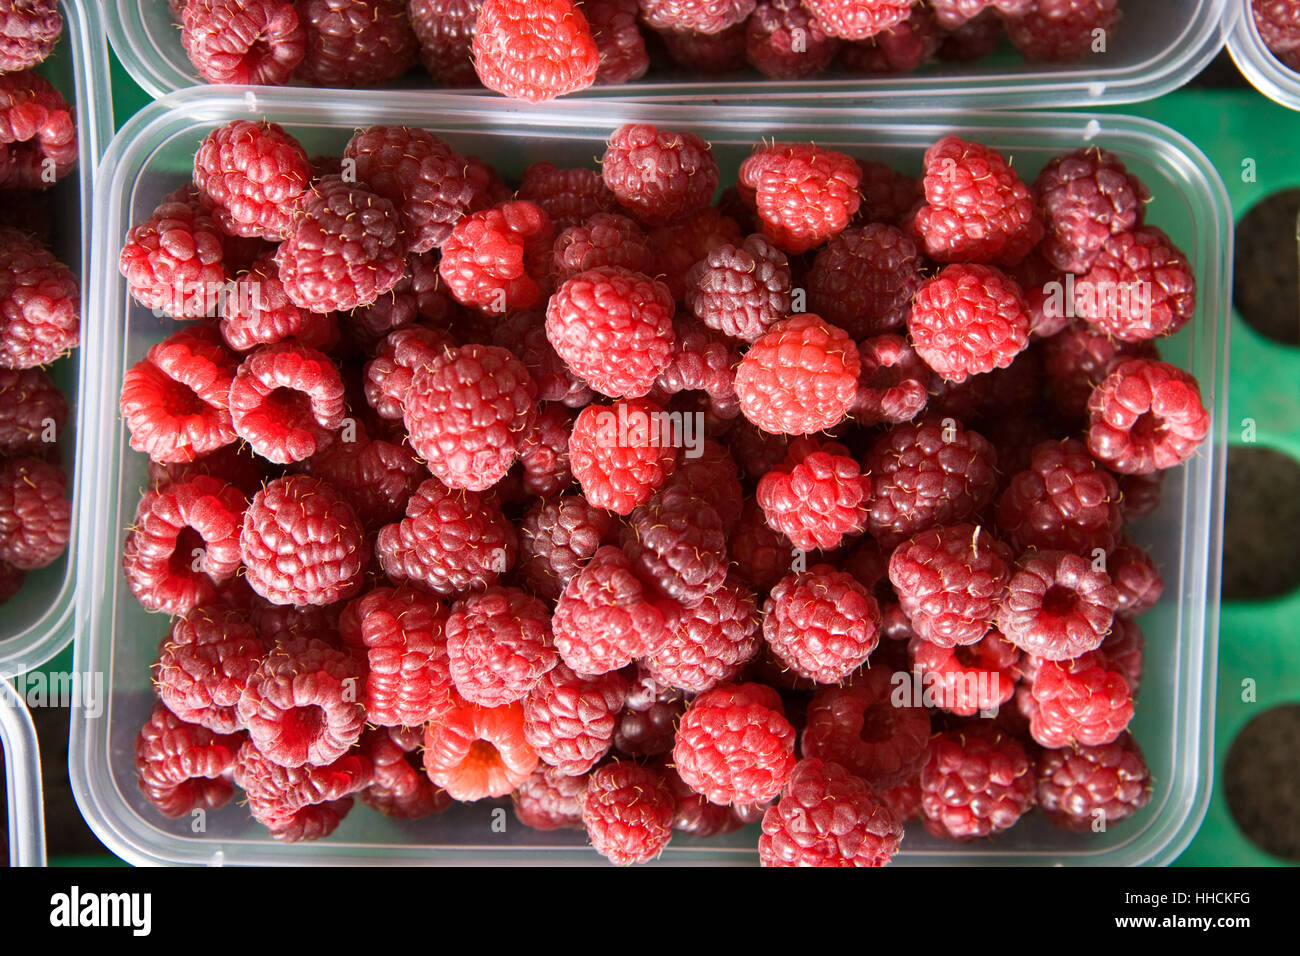 Punnet of freshly picked Raspberries. Stock Photo